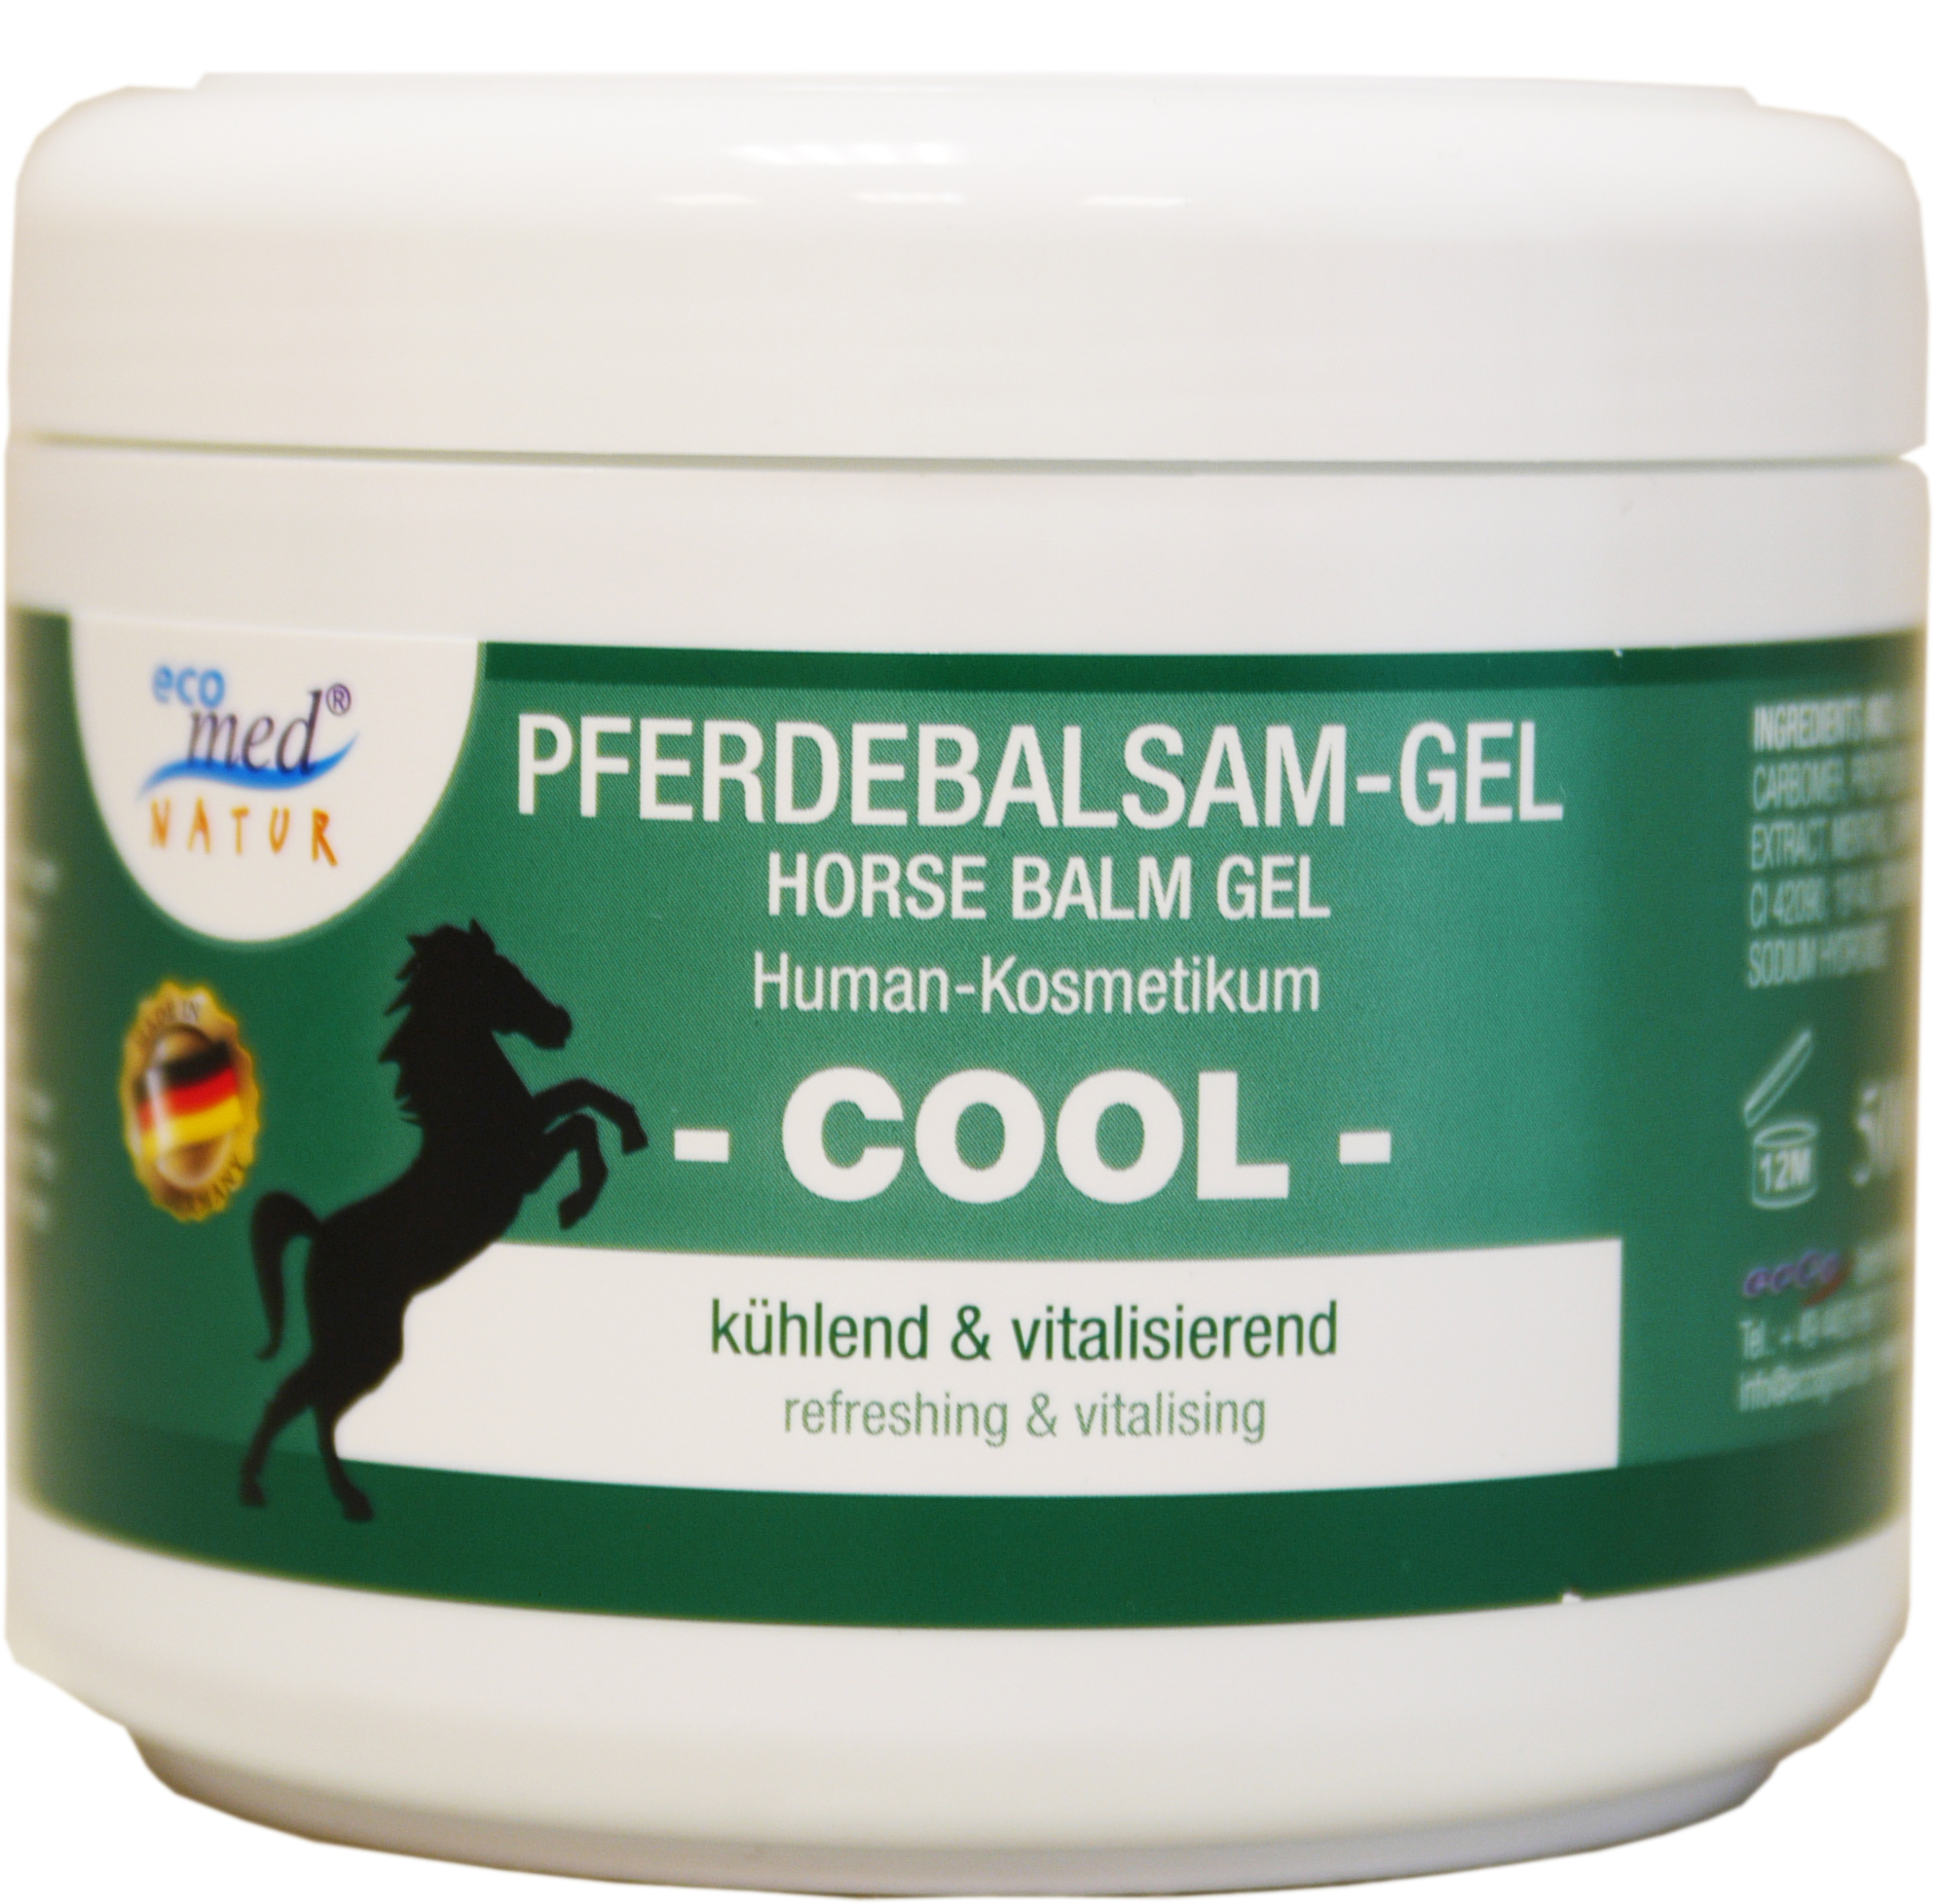 01853 - horse balm gel 500 ml 